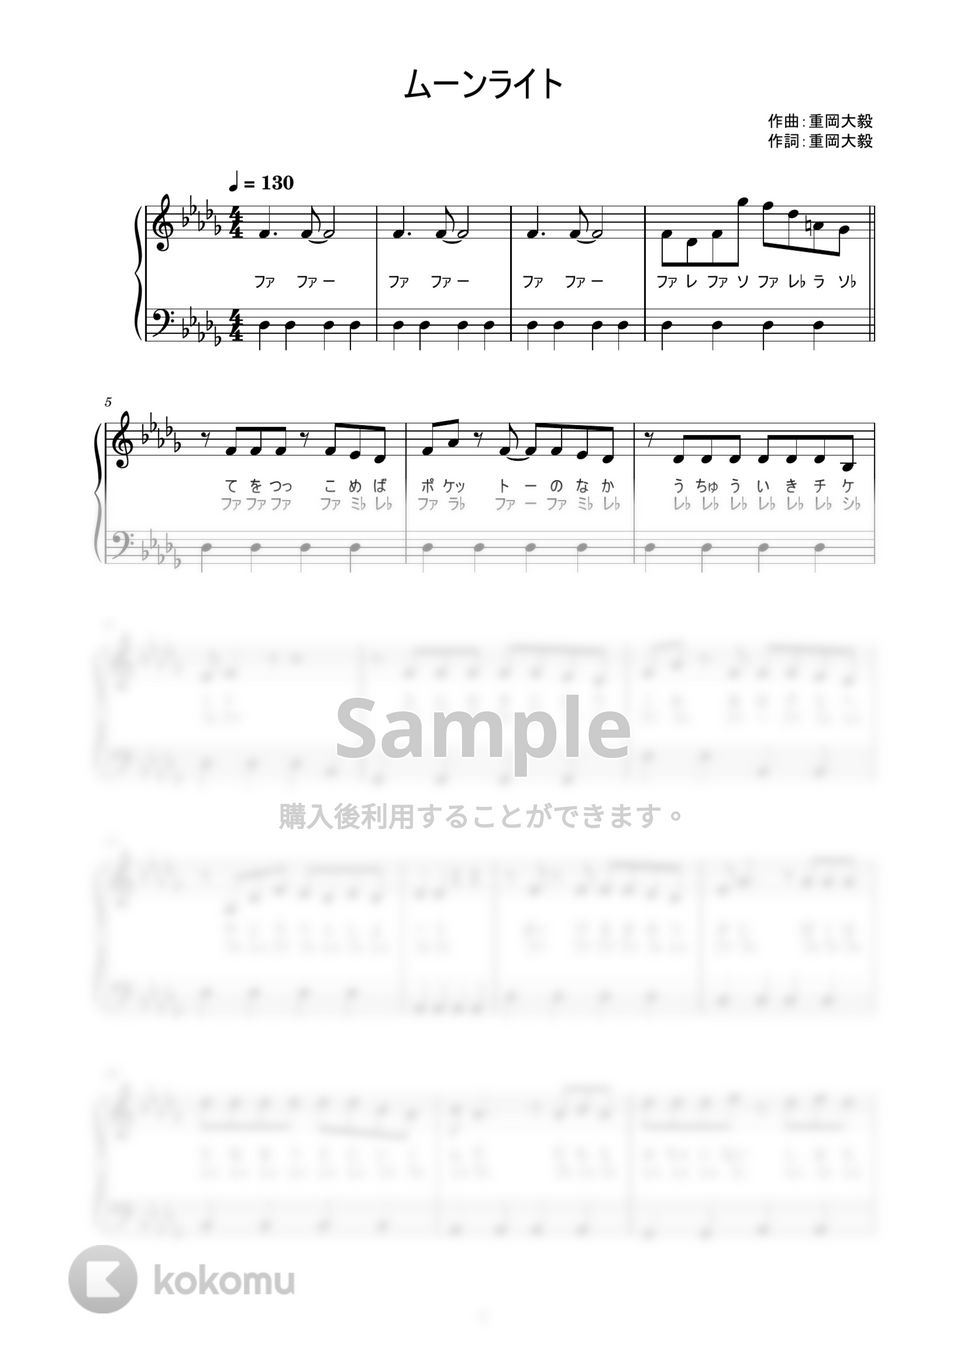 ジャニーズWEST - ムーンライト (かんたん / 歌詞付き / ドレミ付き / 初心者) by piano.tokyo